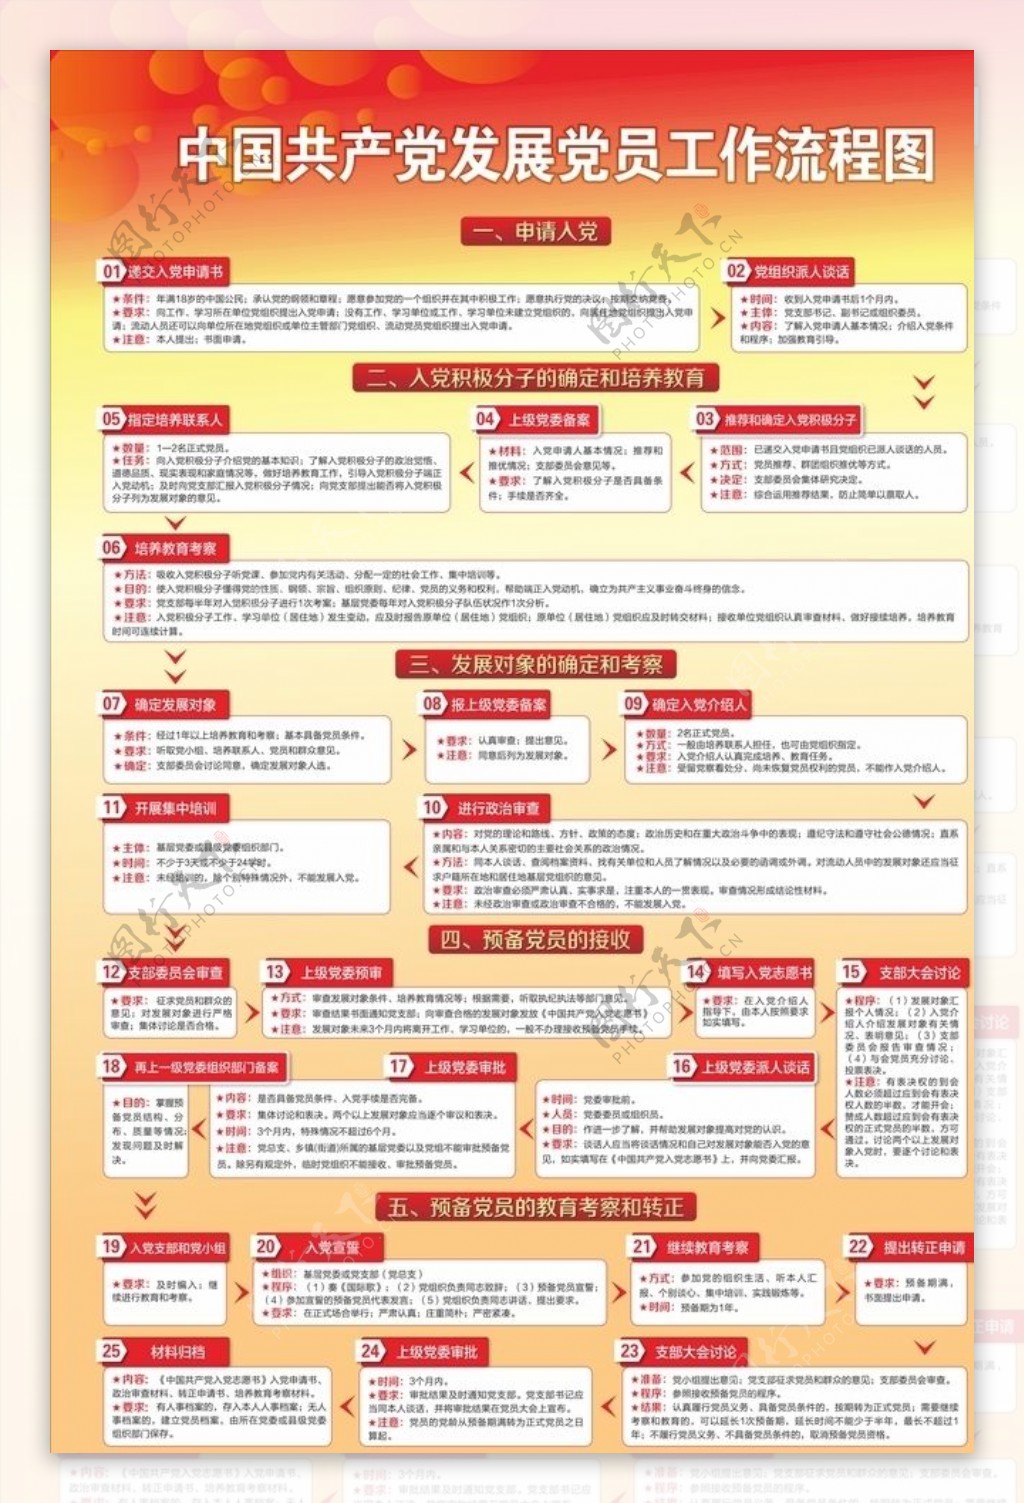 中国共产党发展党员工作流程图展